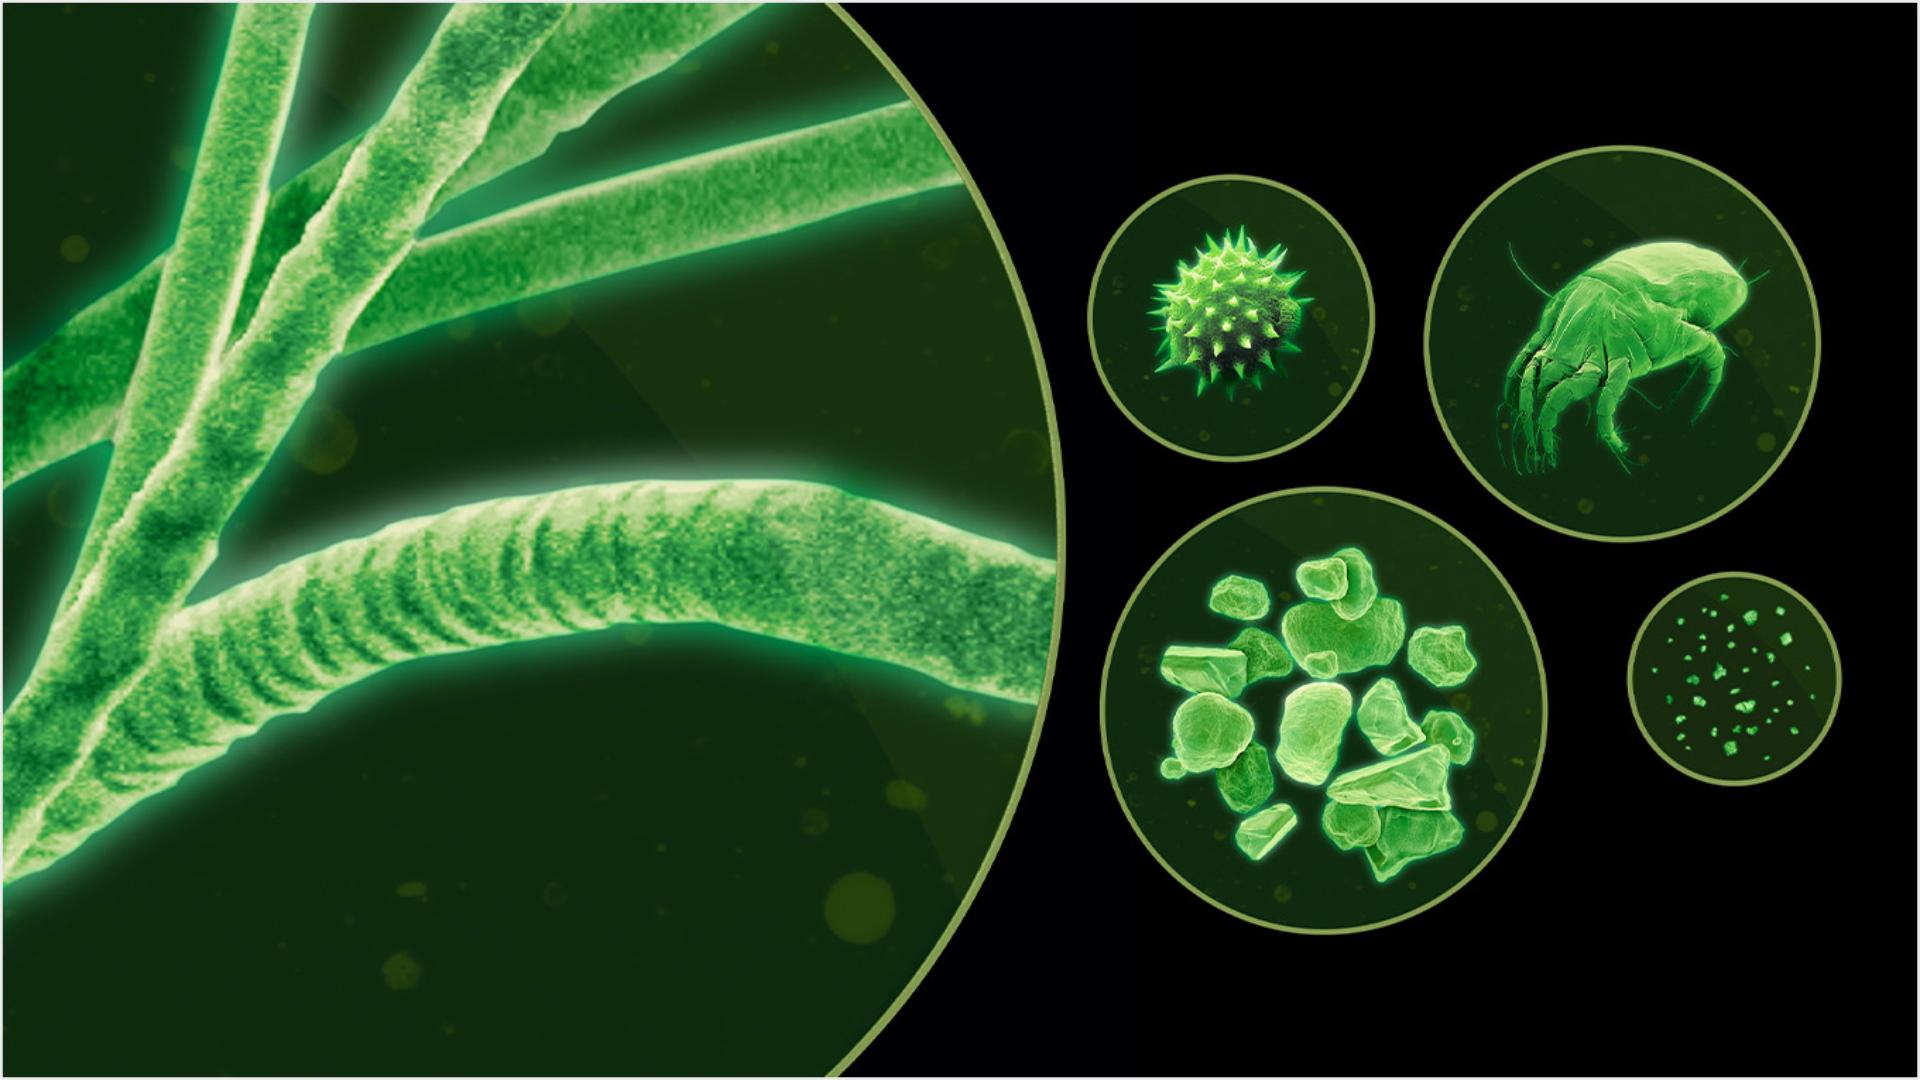 Różne mikroskopijne cząsteczki w zielonkawym odcieniu, widziane pod mikroskopem.